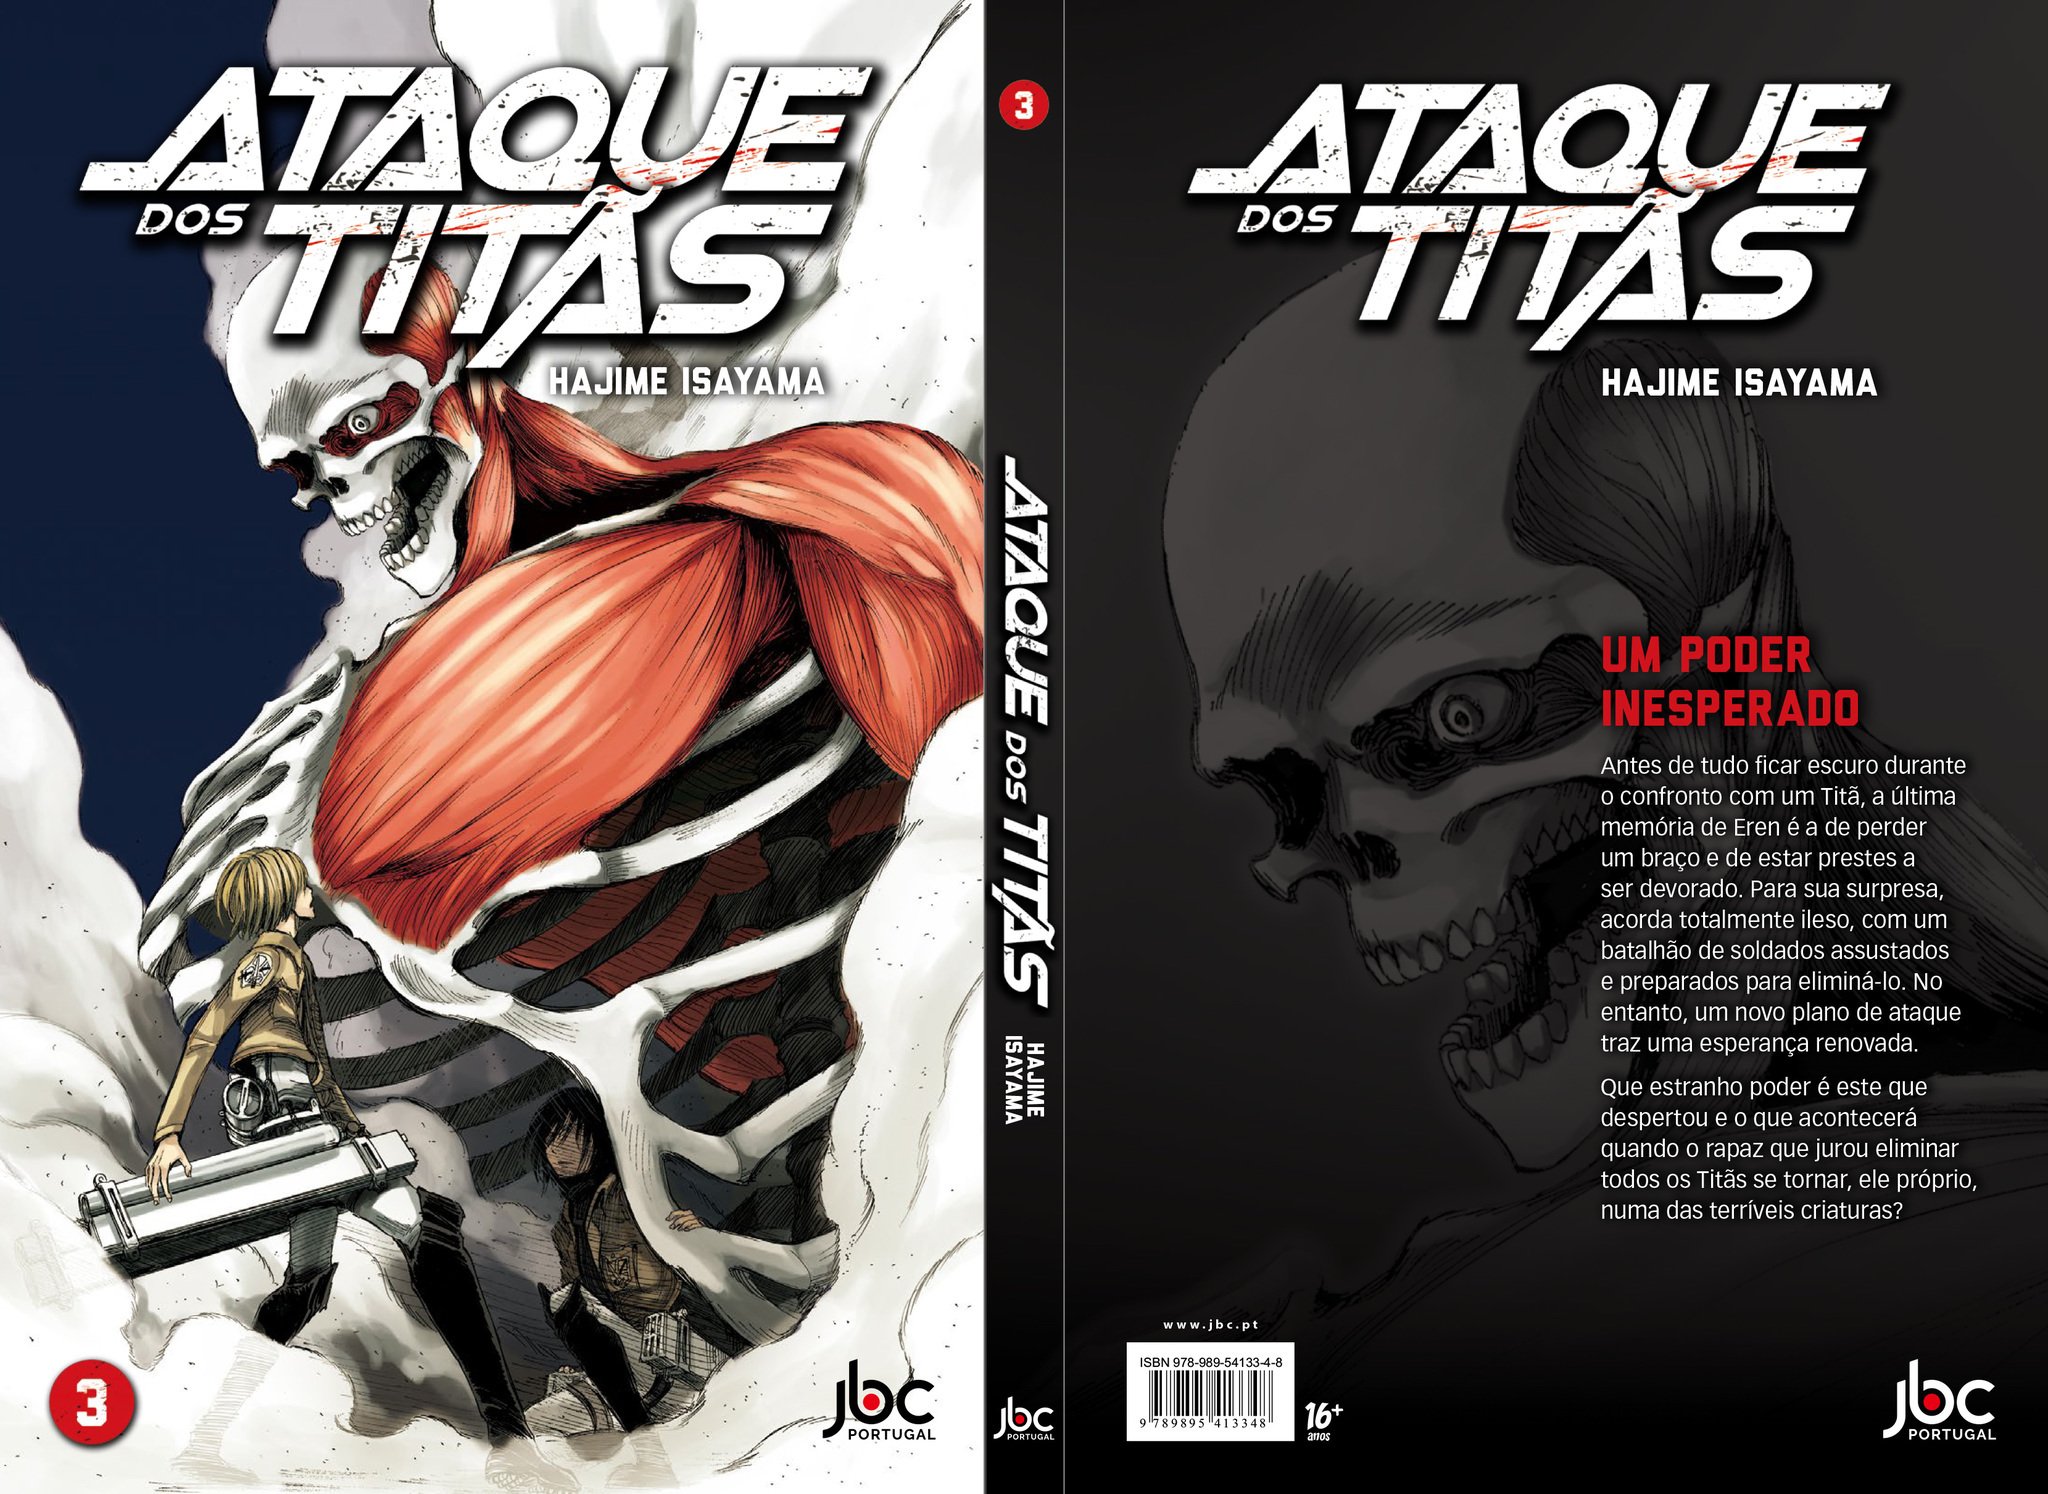 Ataque dos Titãs Vol. 3: Série Original